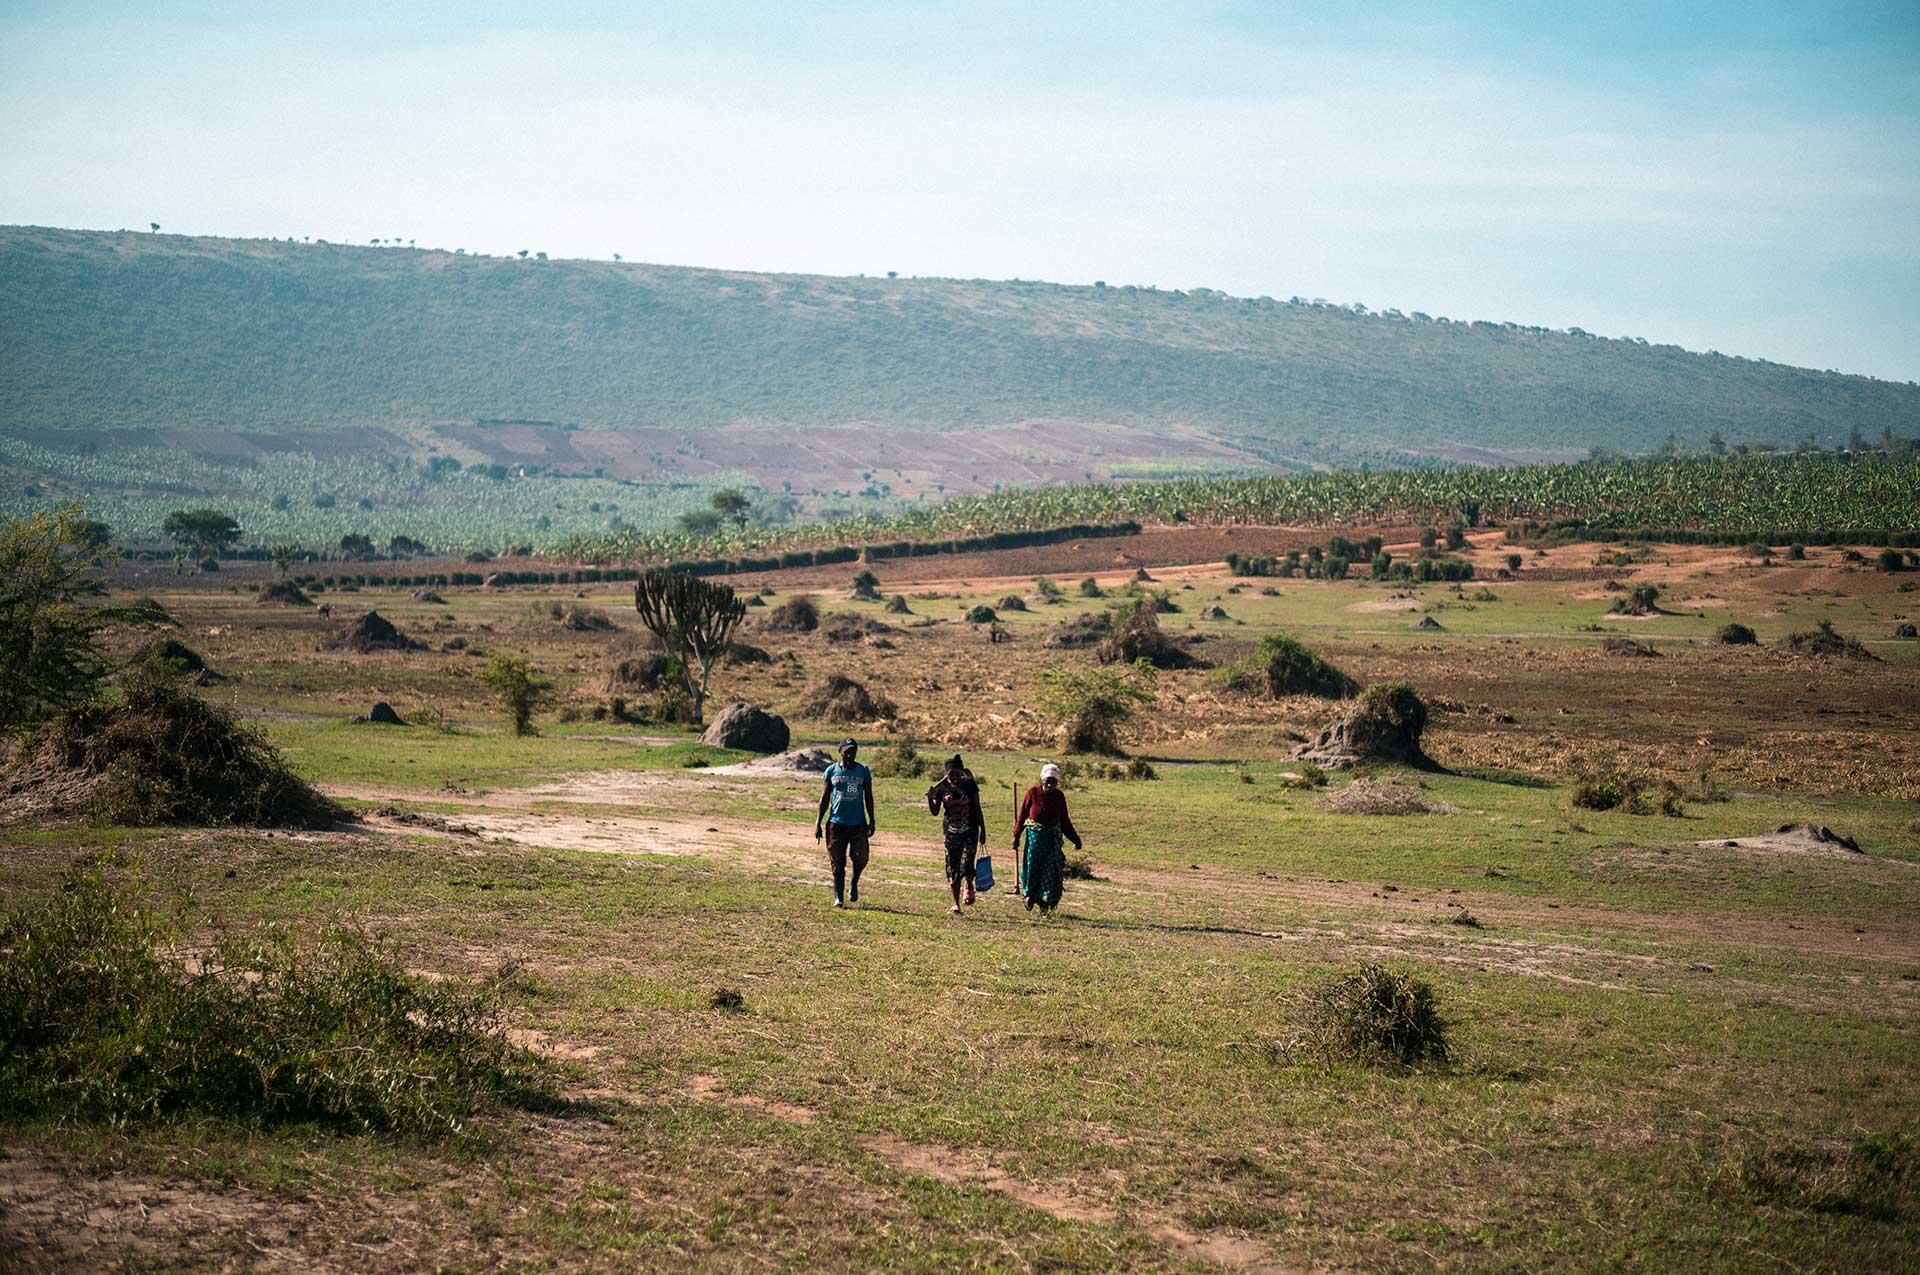 Kolme ihmistä kävelee kukkuloiden välissä olevassa laaksossa Ugandan maaseudulla. Ihmiset kantavat päänsä päällä ruokabanaaniterttuja.